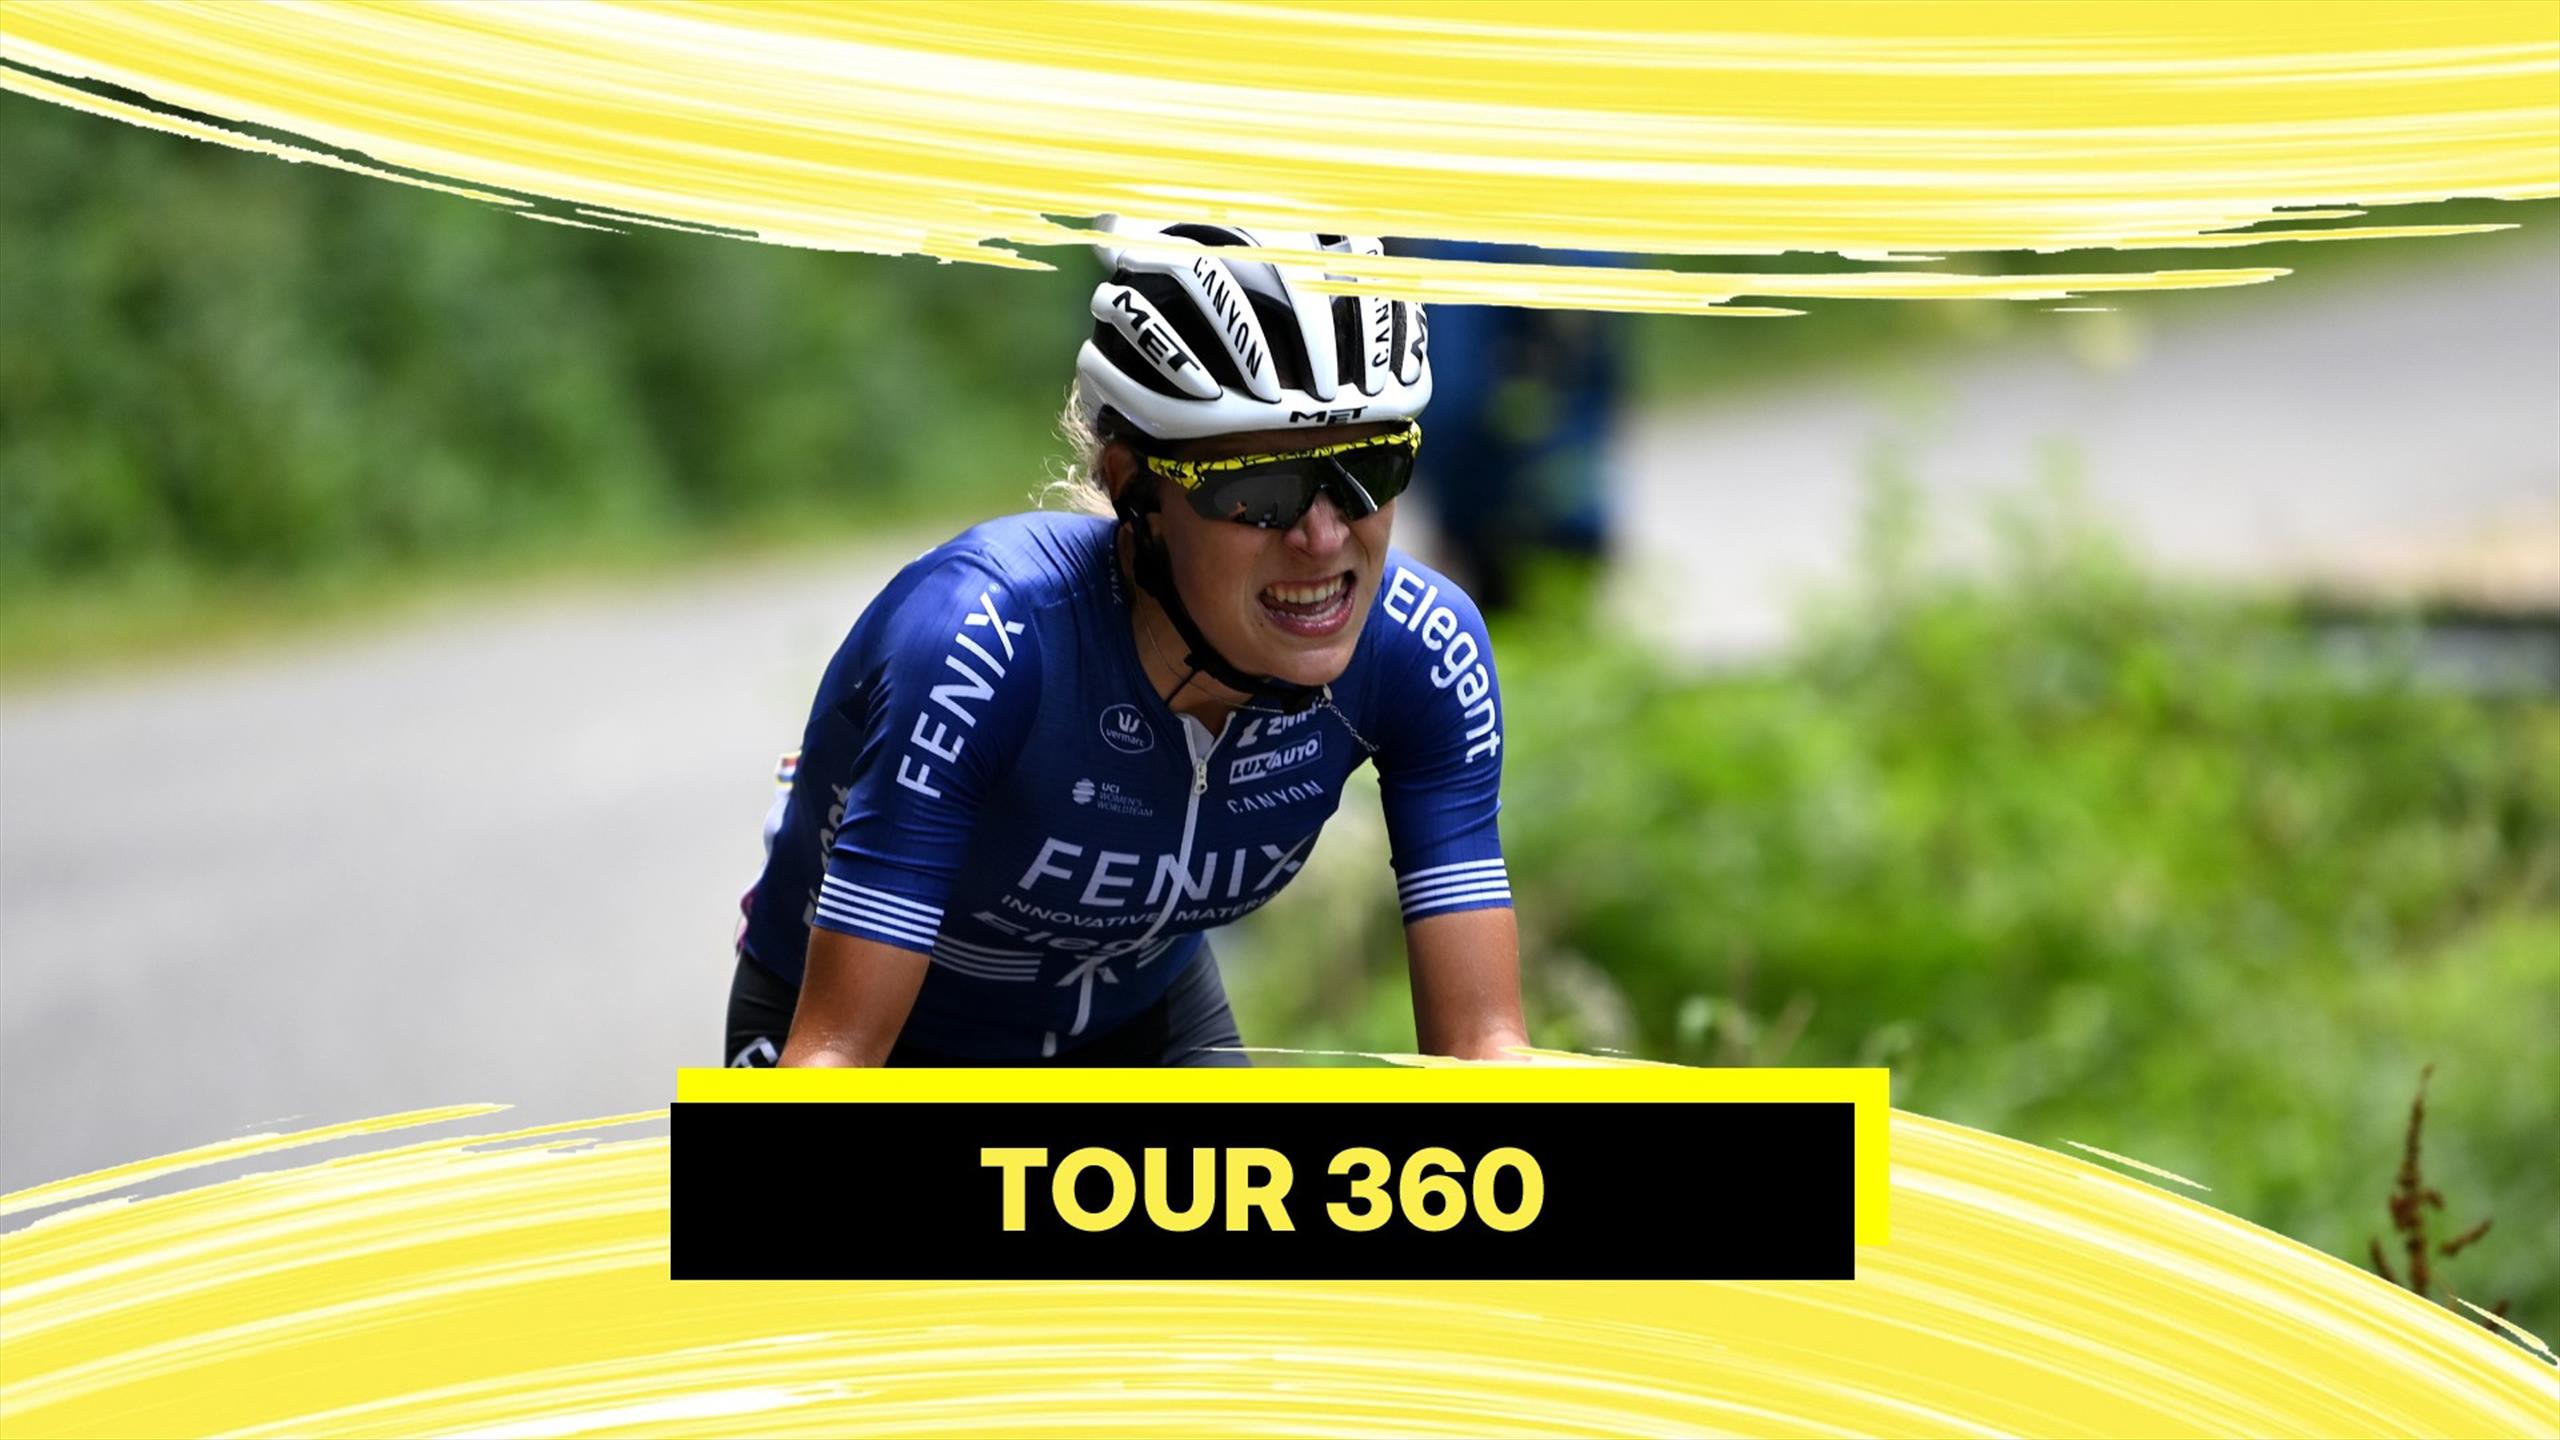 Tour 360: vince Kastelijn, si accende la sfida Vollering-Van Vleuten